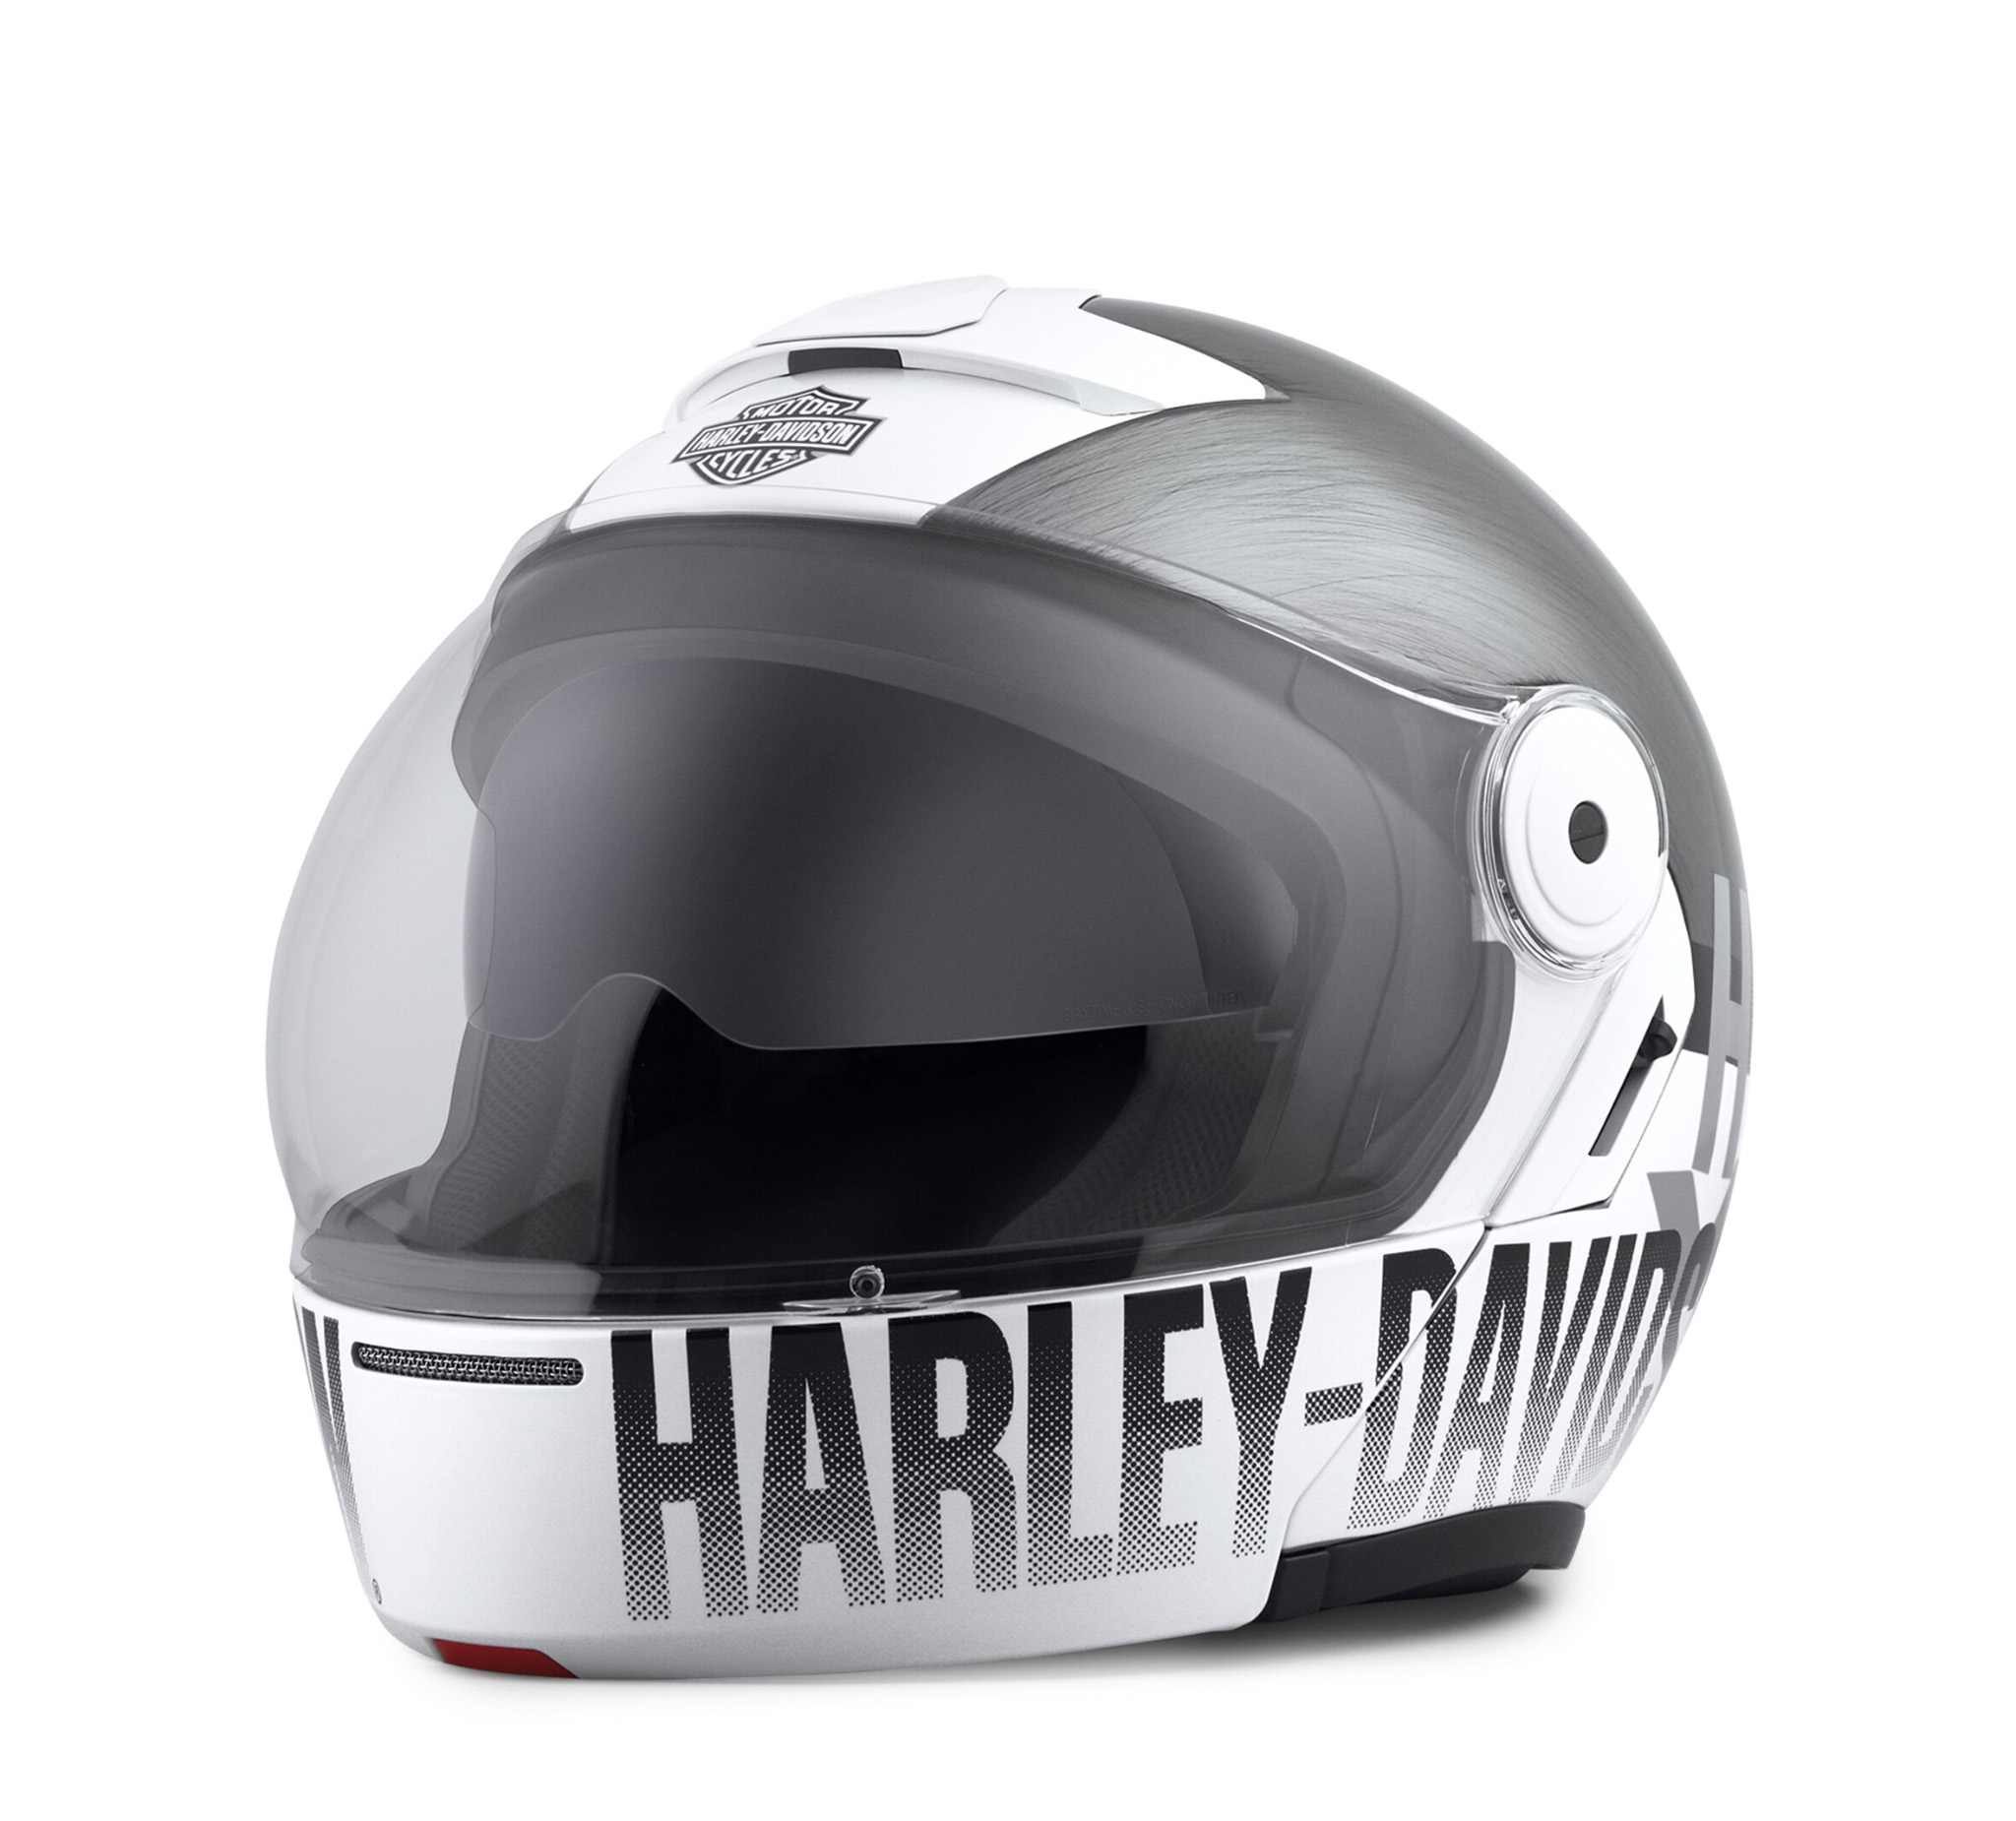 Trend Populer Harley Davidson Helmets